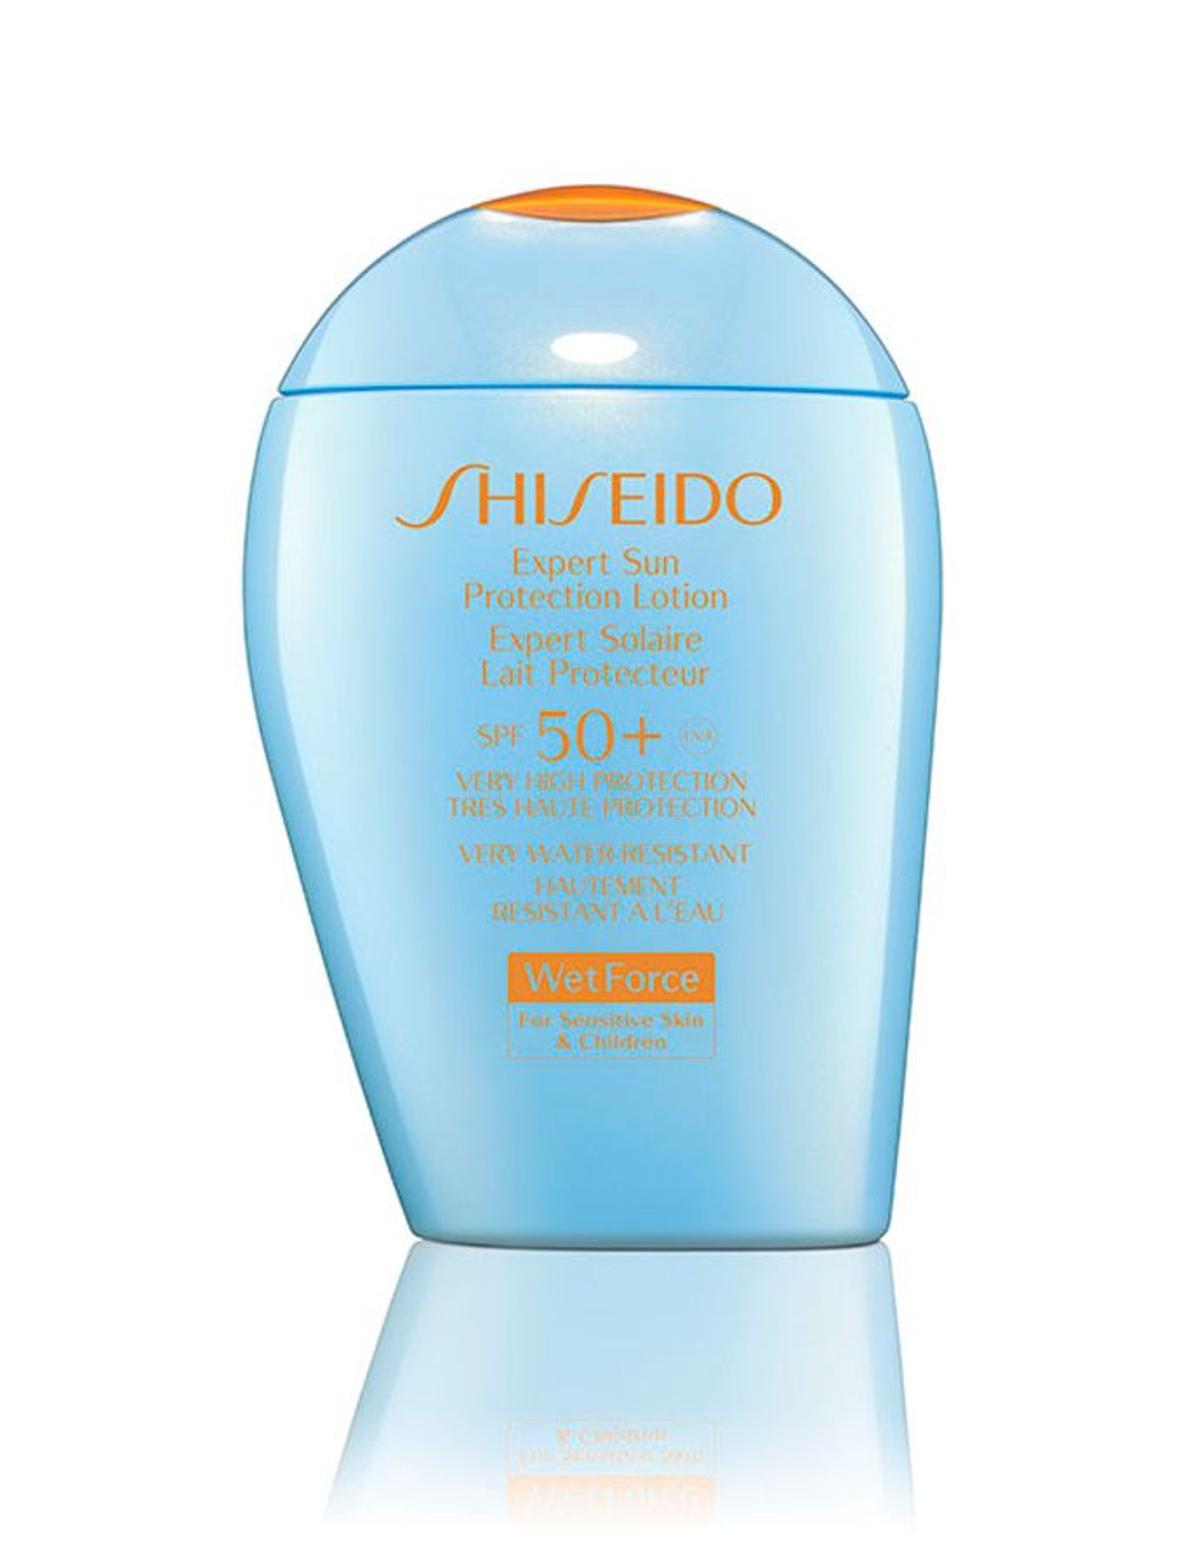 Expert Sun Protection Lotion S SPF 50+, de Shiseido